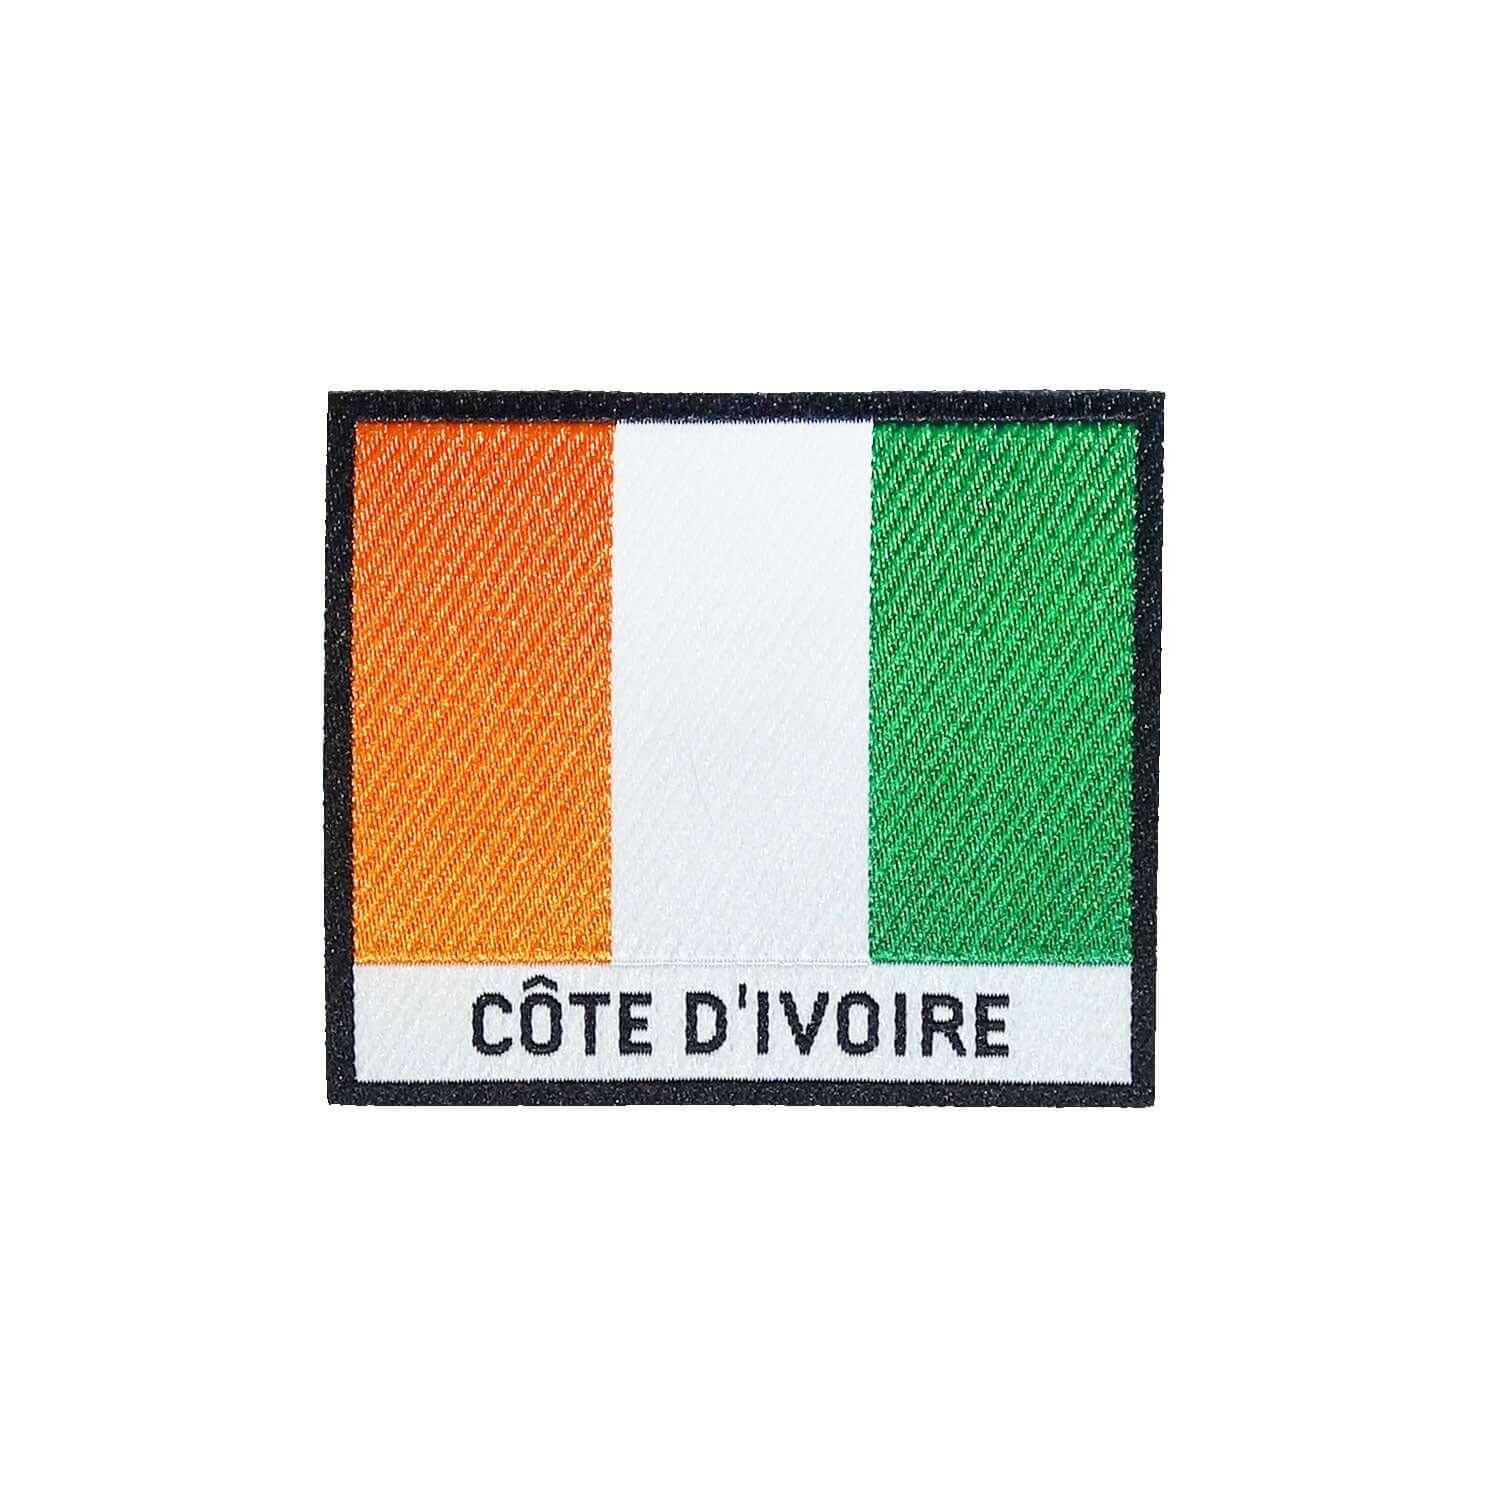 Cote d'Ivoire Flag Iron On Patch - Rocket Factory Apparel